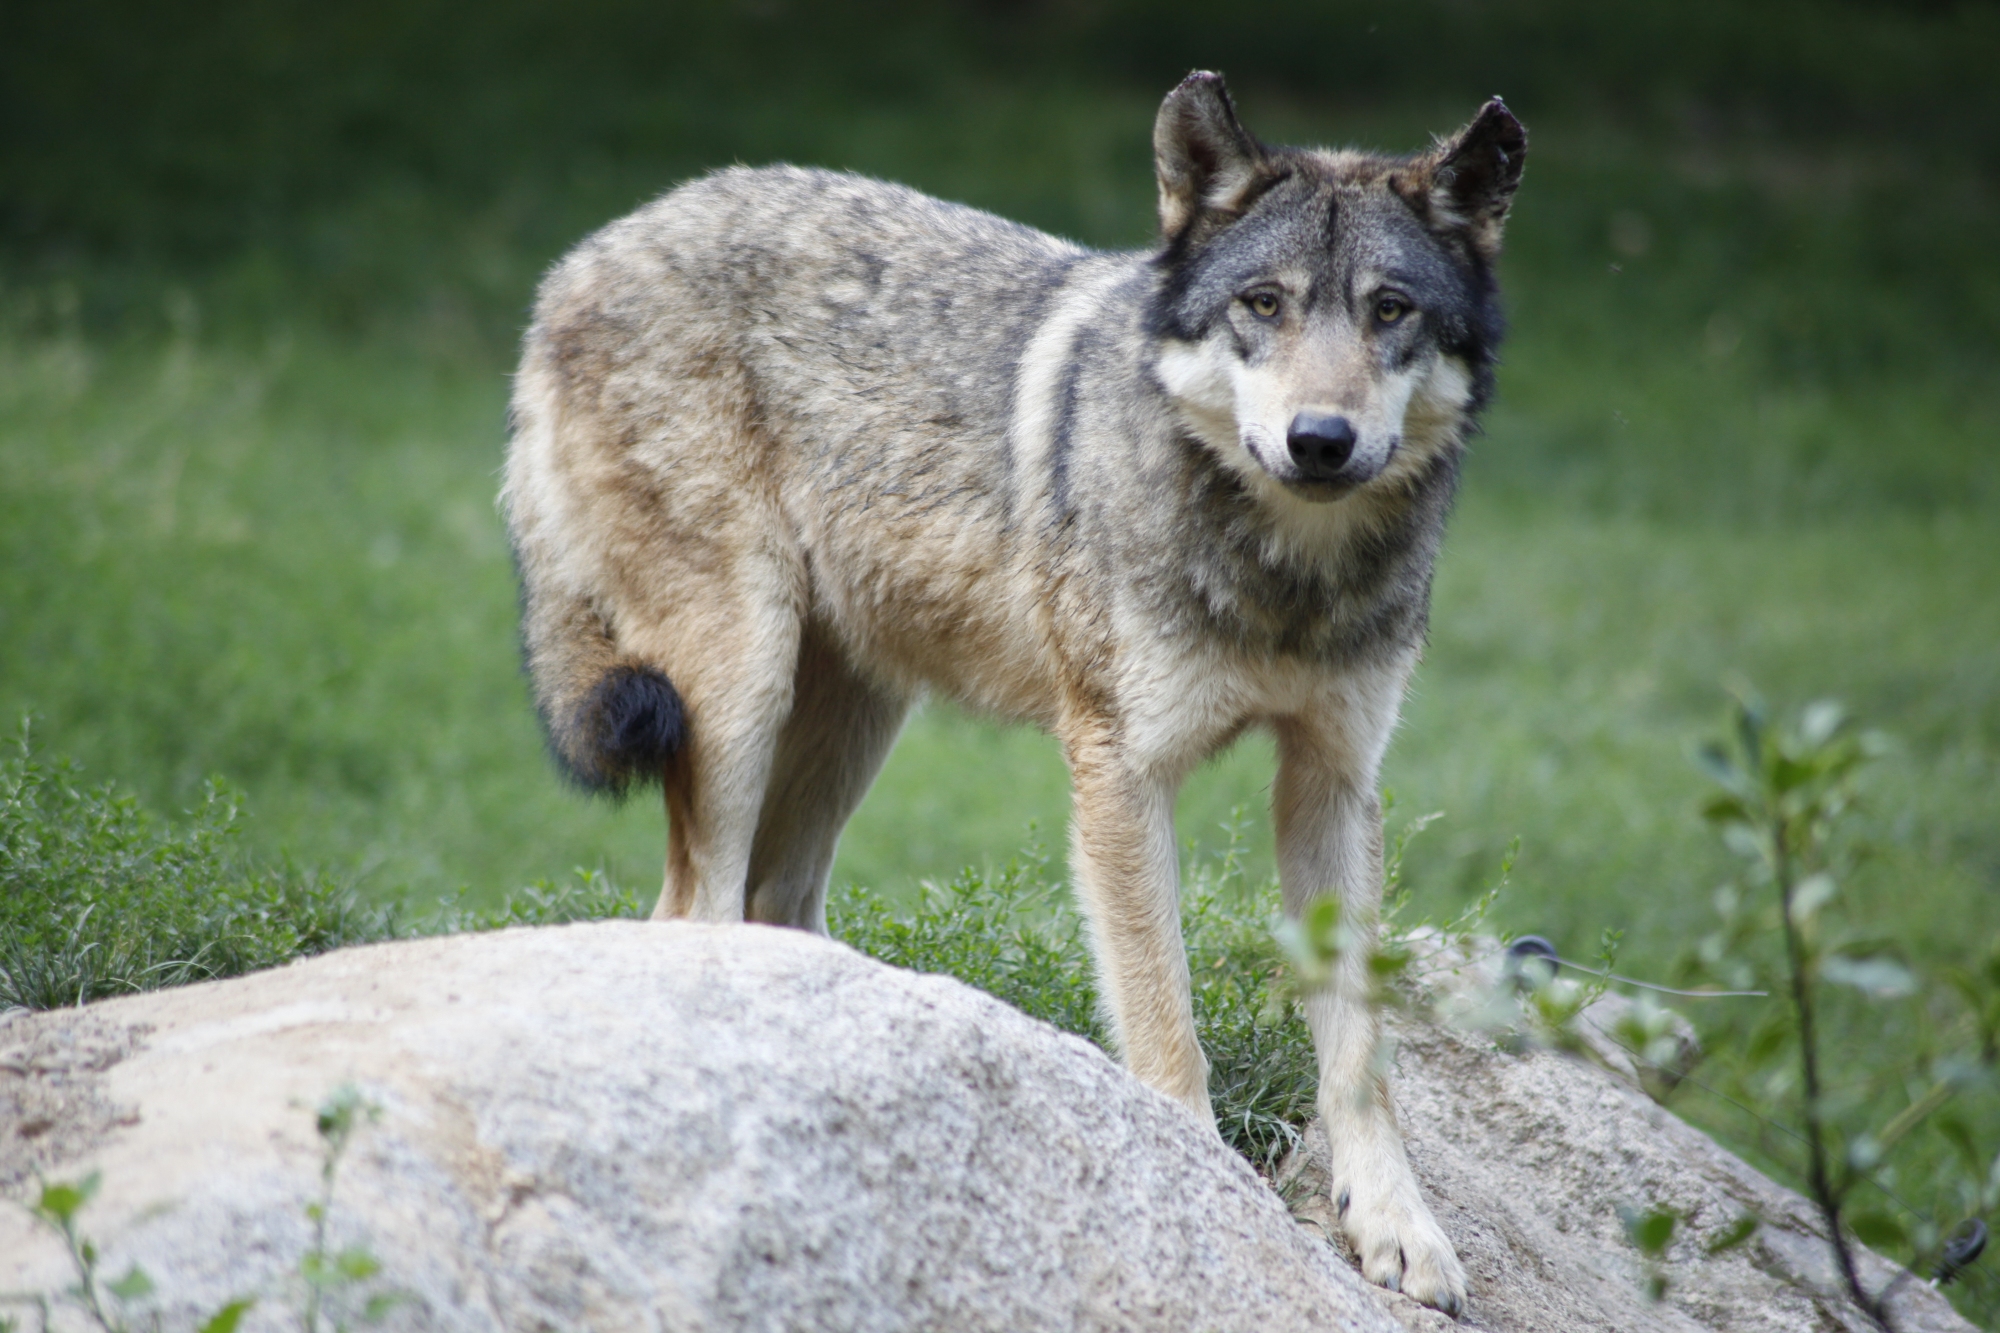 Les loups gris sont présents en grand nombre dans les zones contaminées il y a trente ans par la radioactivité dégagée après l'accident nucléaire de Tchernobyl. © Dfrancou - Licence Creative Commons 4.0 International